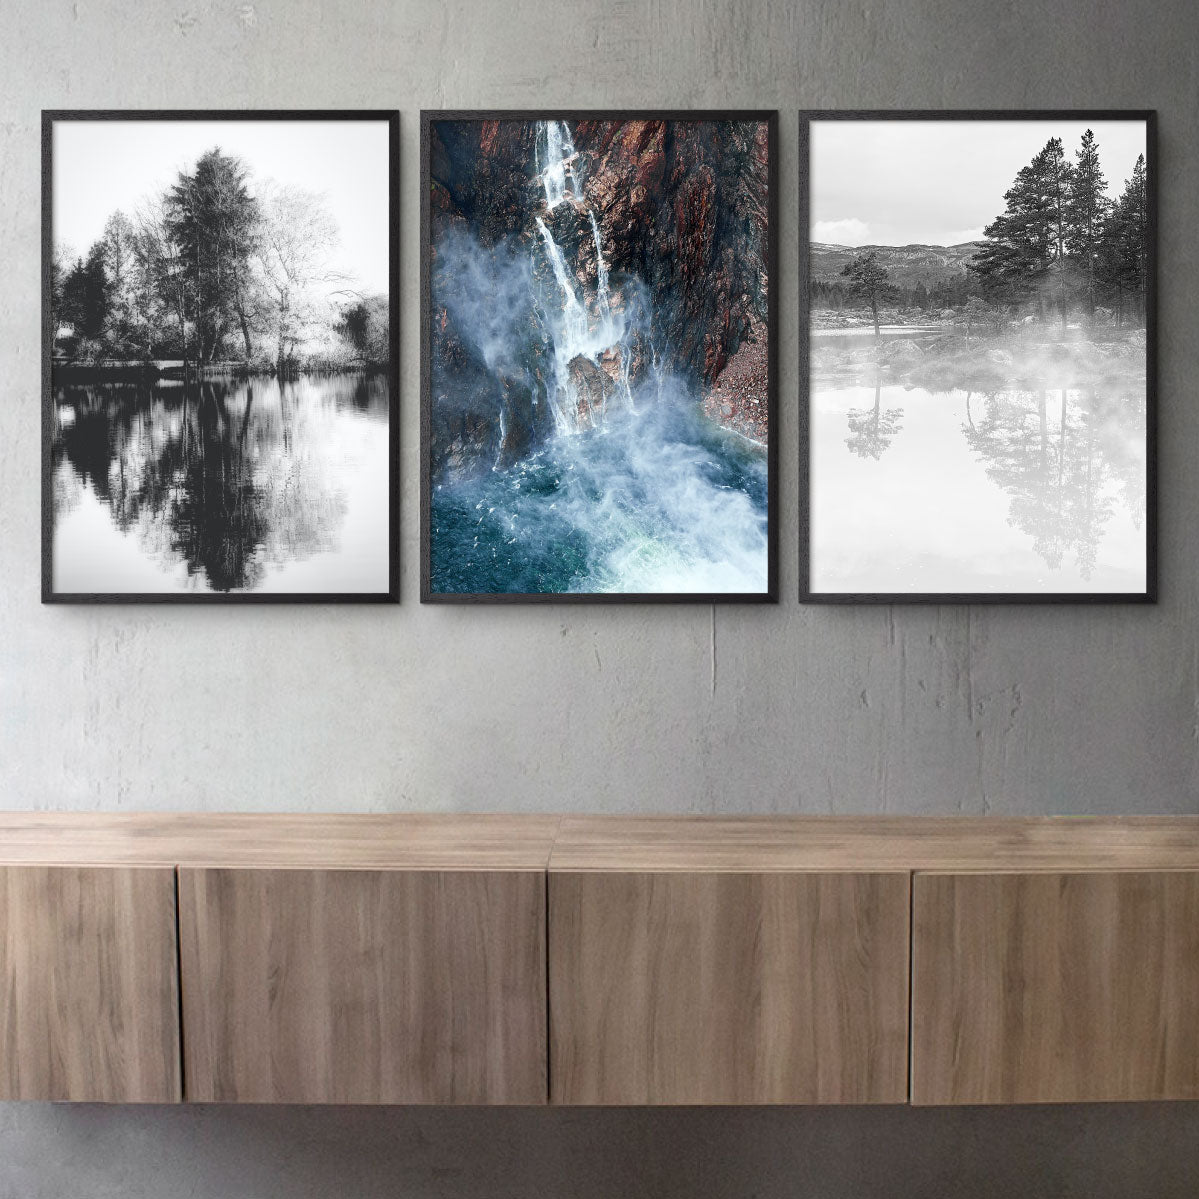 tre natur plakater med vandmotiver i sort-hvid og farver